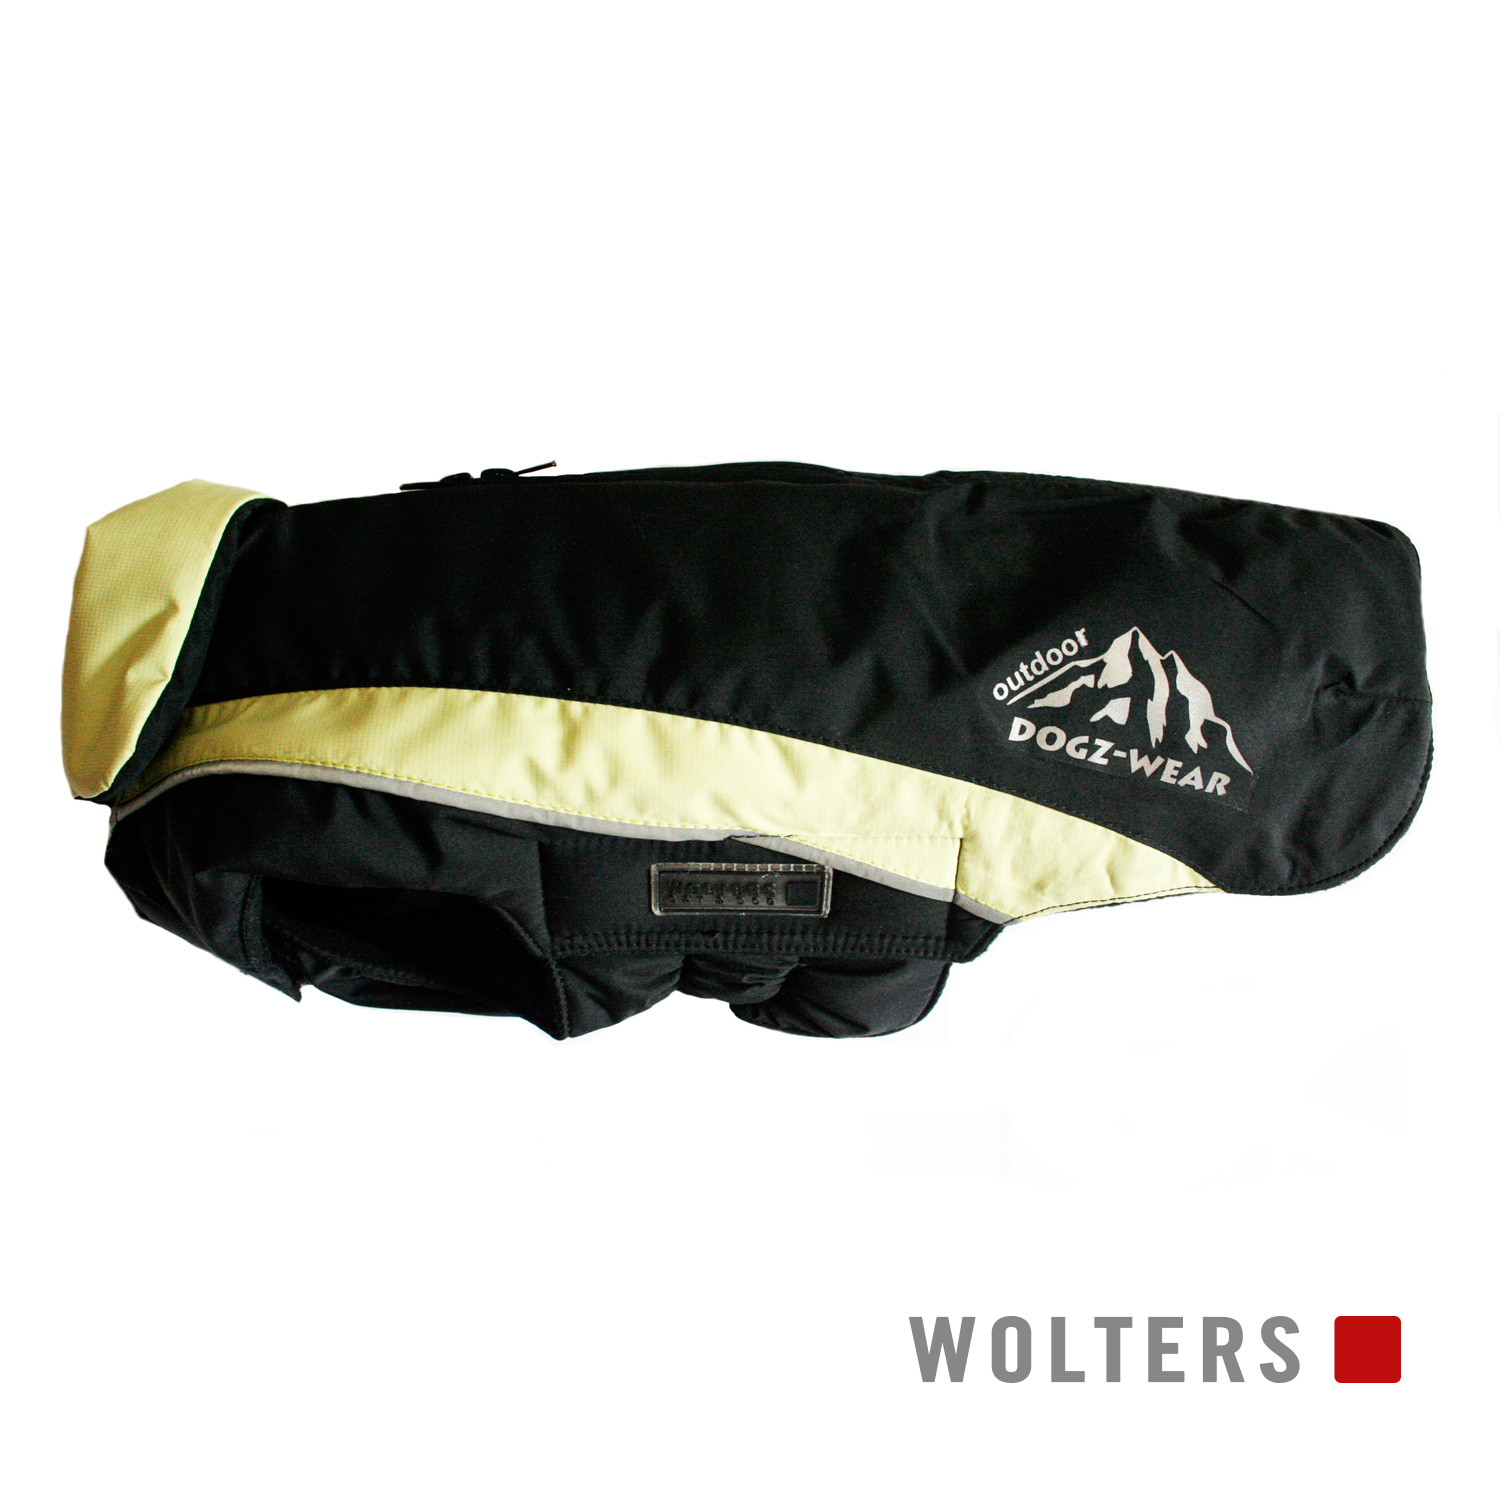 Wolters Skijacke Dogz Wear mit wasserdichtem Reißverschluss - schwarz/lime